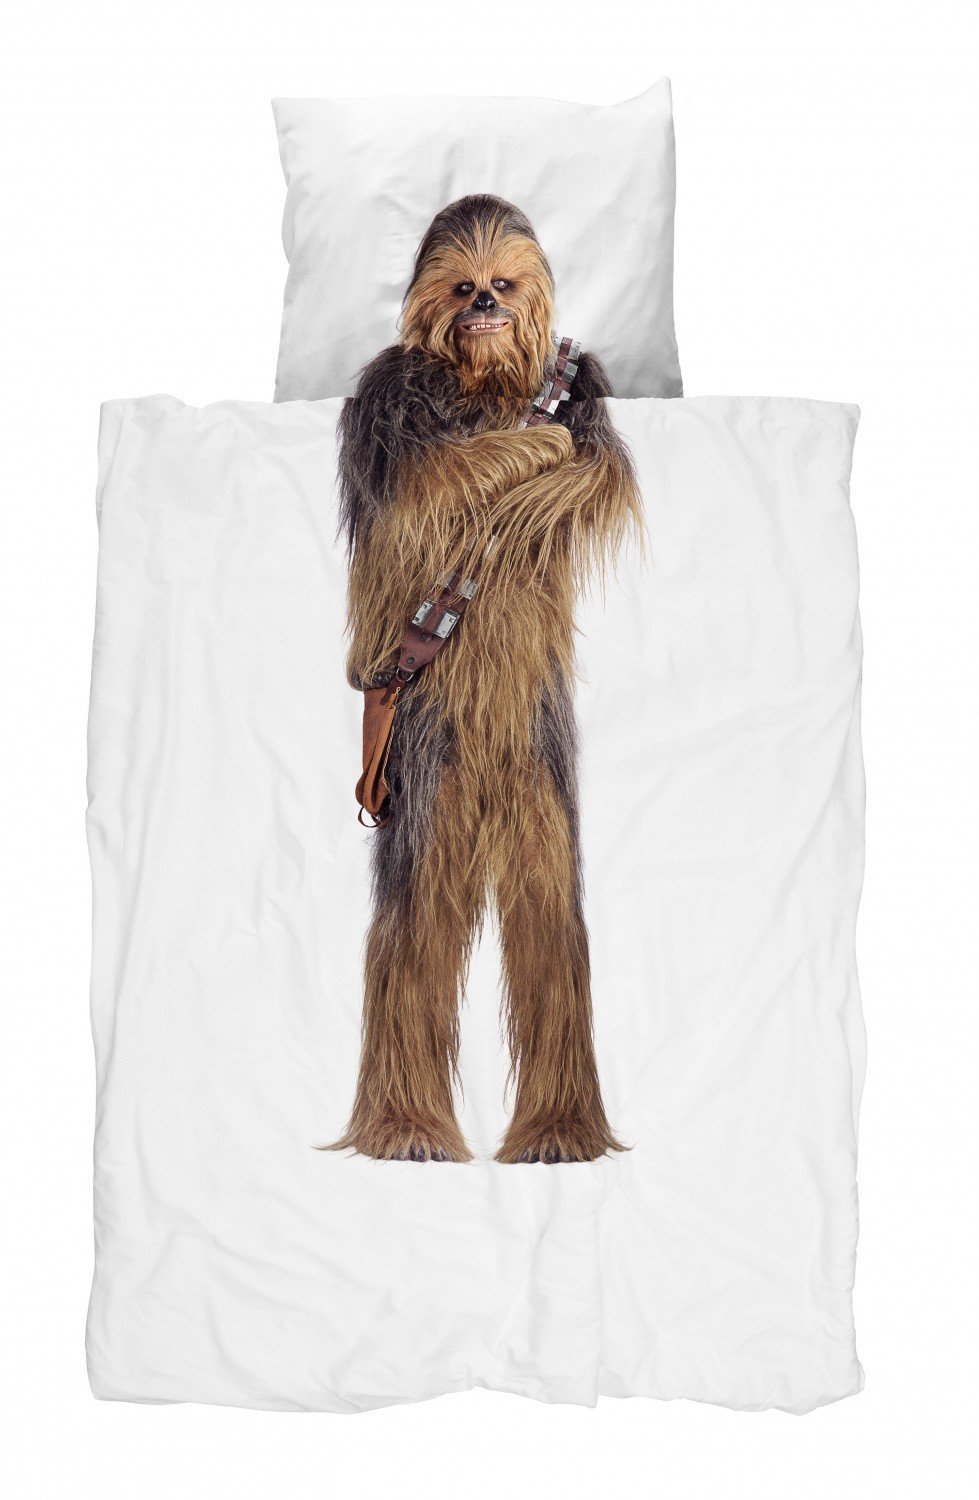 Star Wars Geschenkidee - Chewbacca Bettwäsche